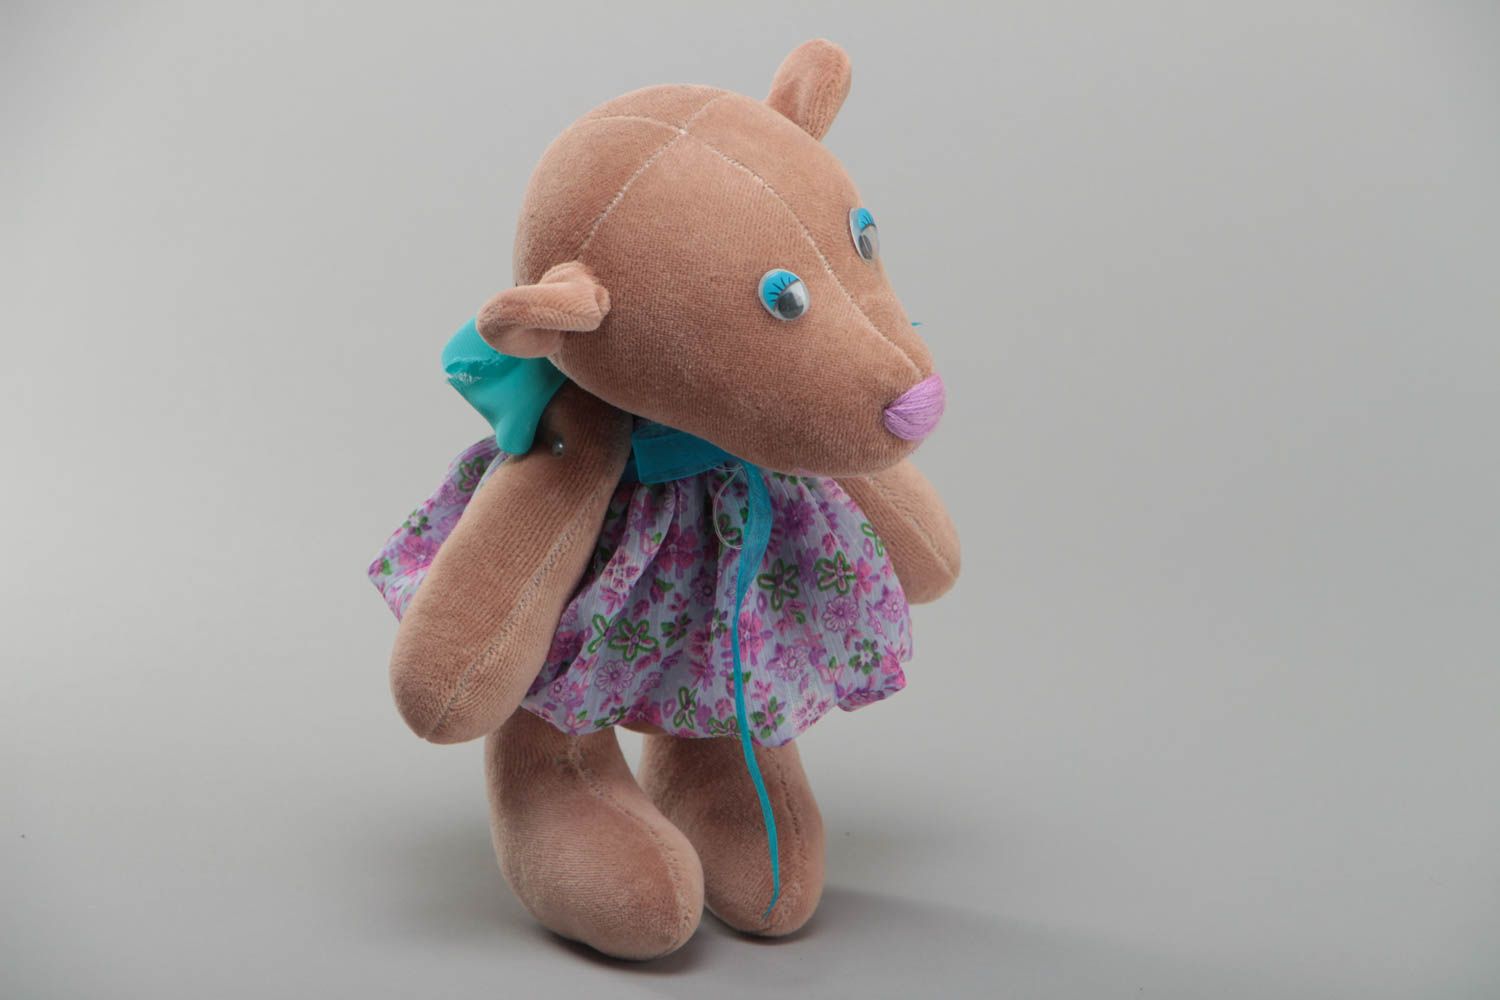 Мягкая игрушка ручной работы в виде мишки в платье небольшая красивая хэнд мейд фото 2